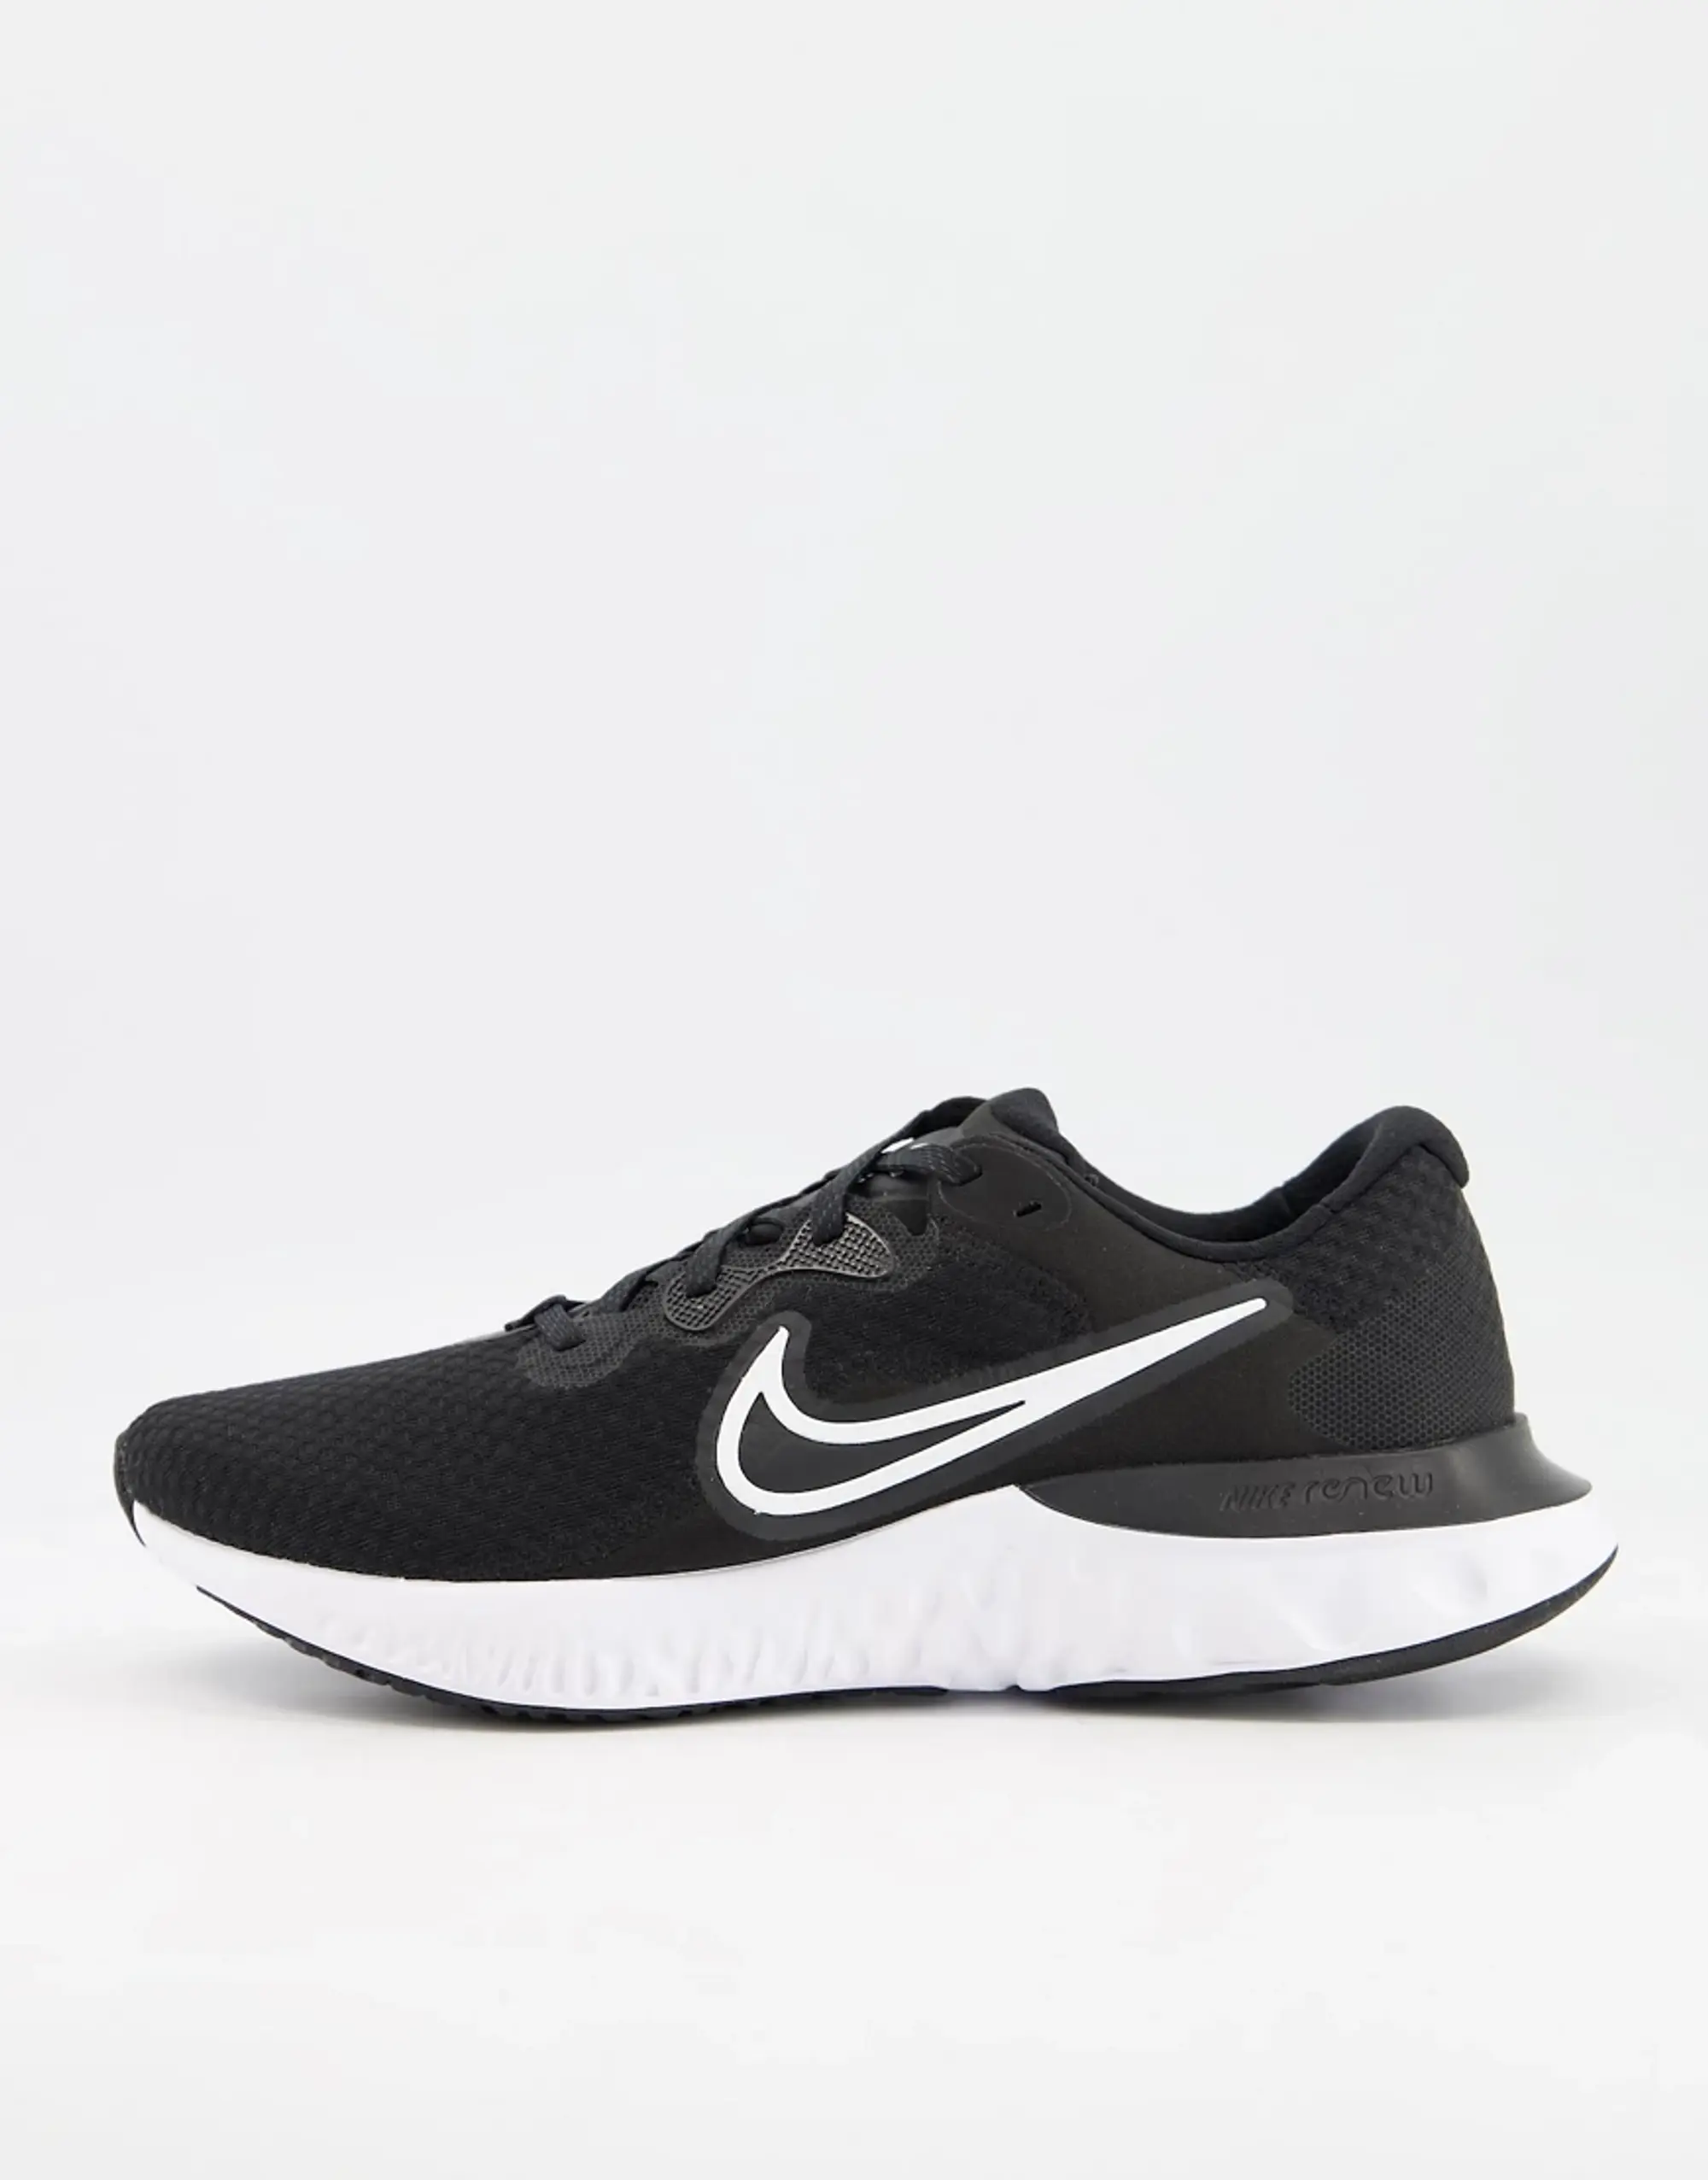 Nike Running Renew Run 2 Trainers In Black And White